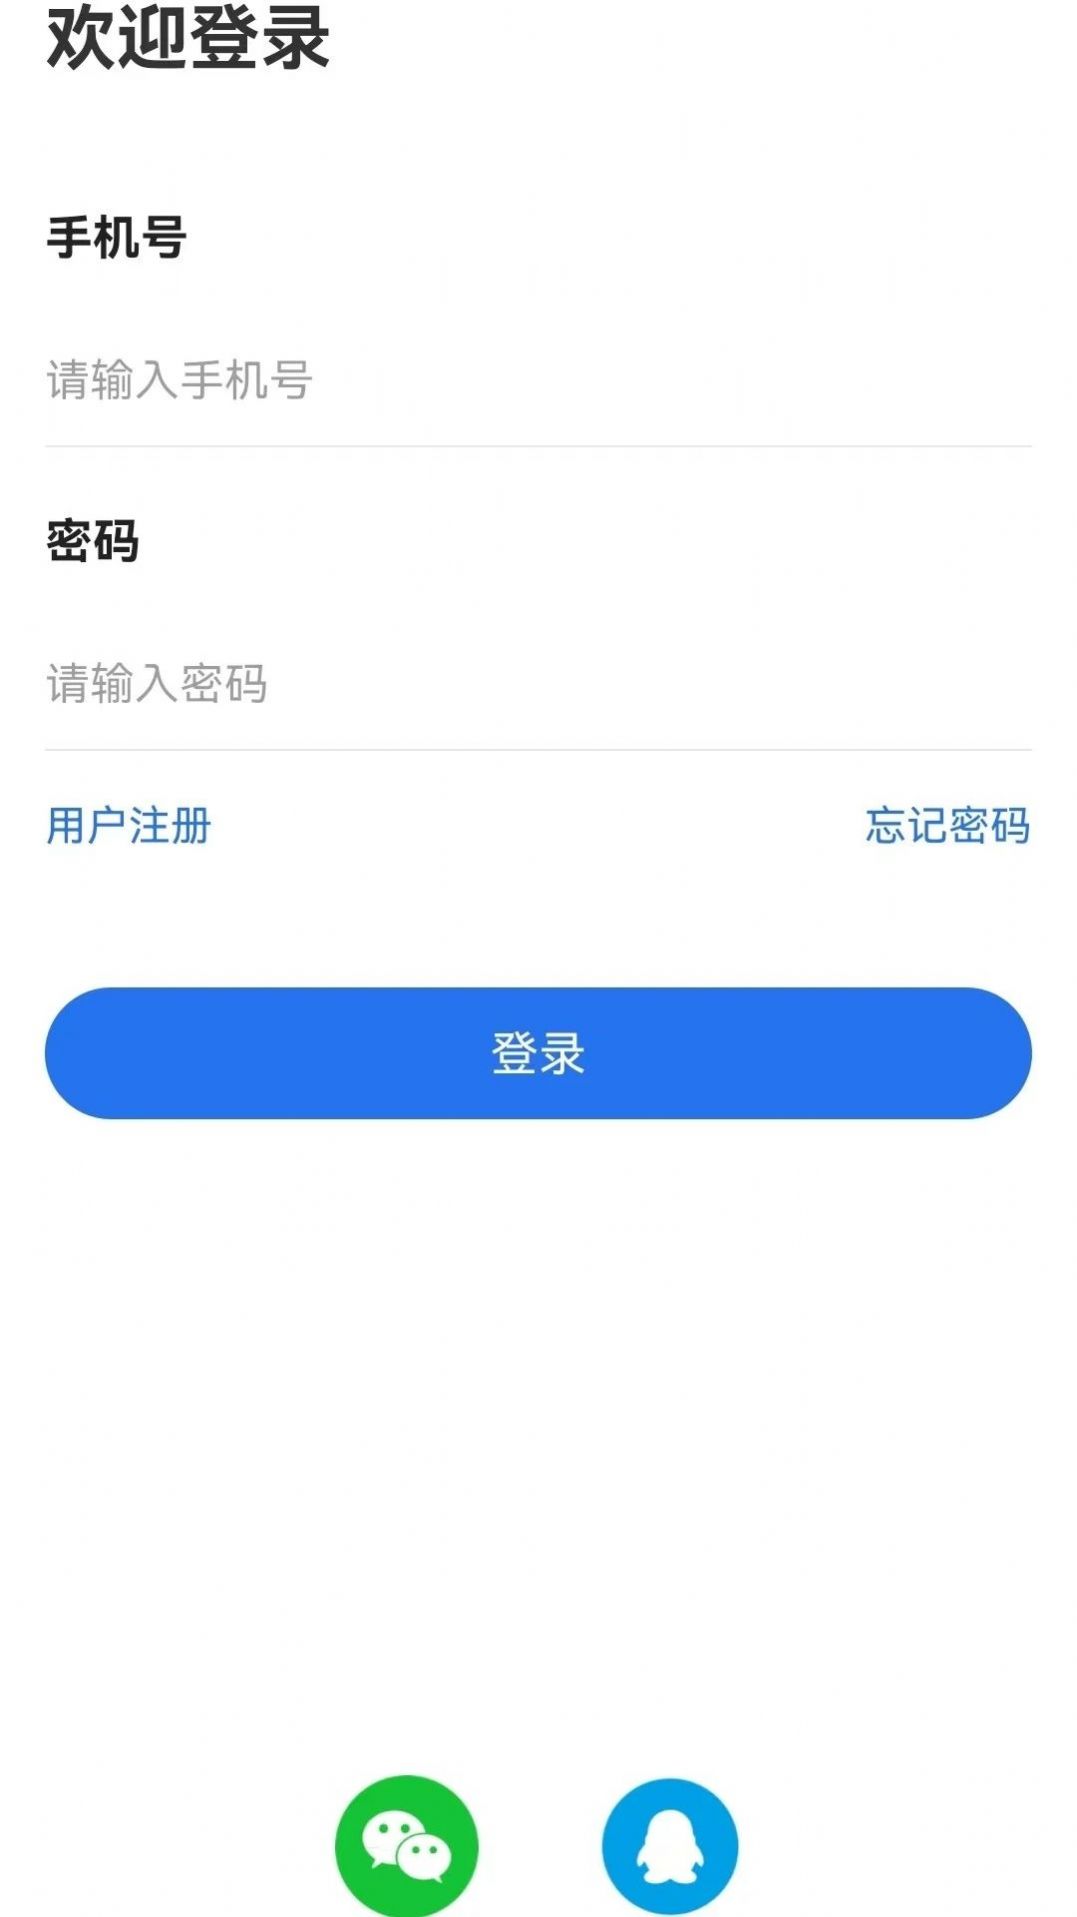 松三窝监理端app最新版